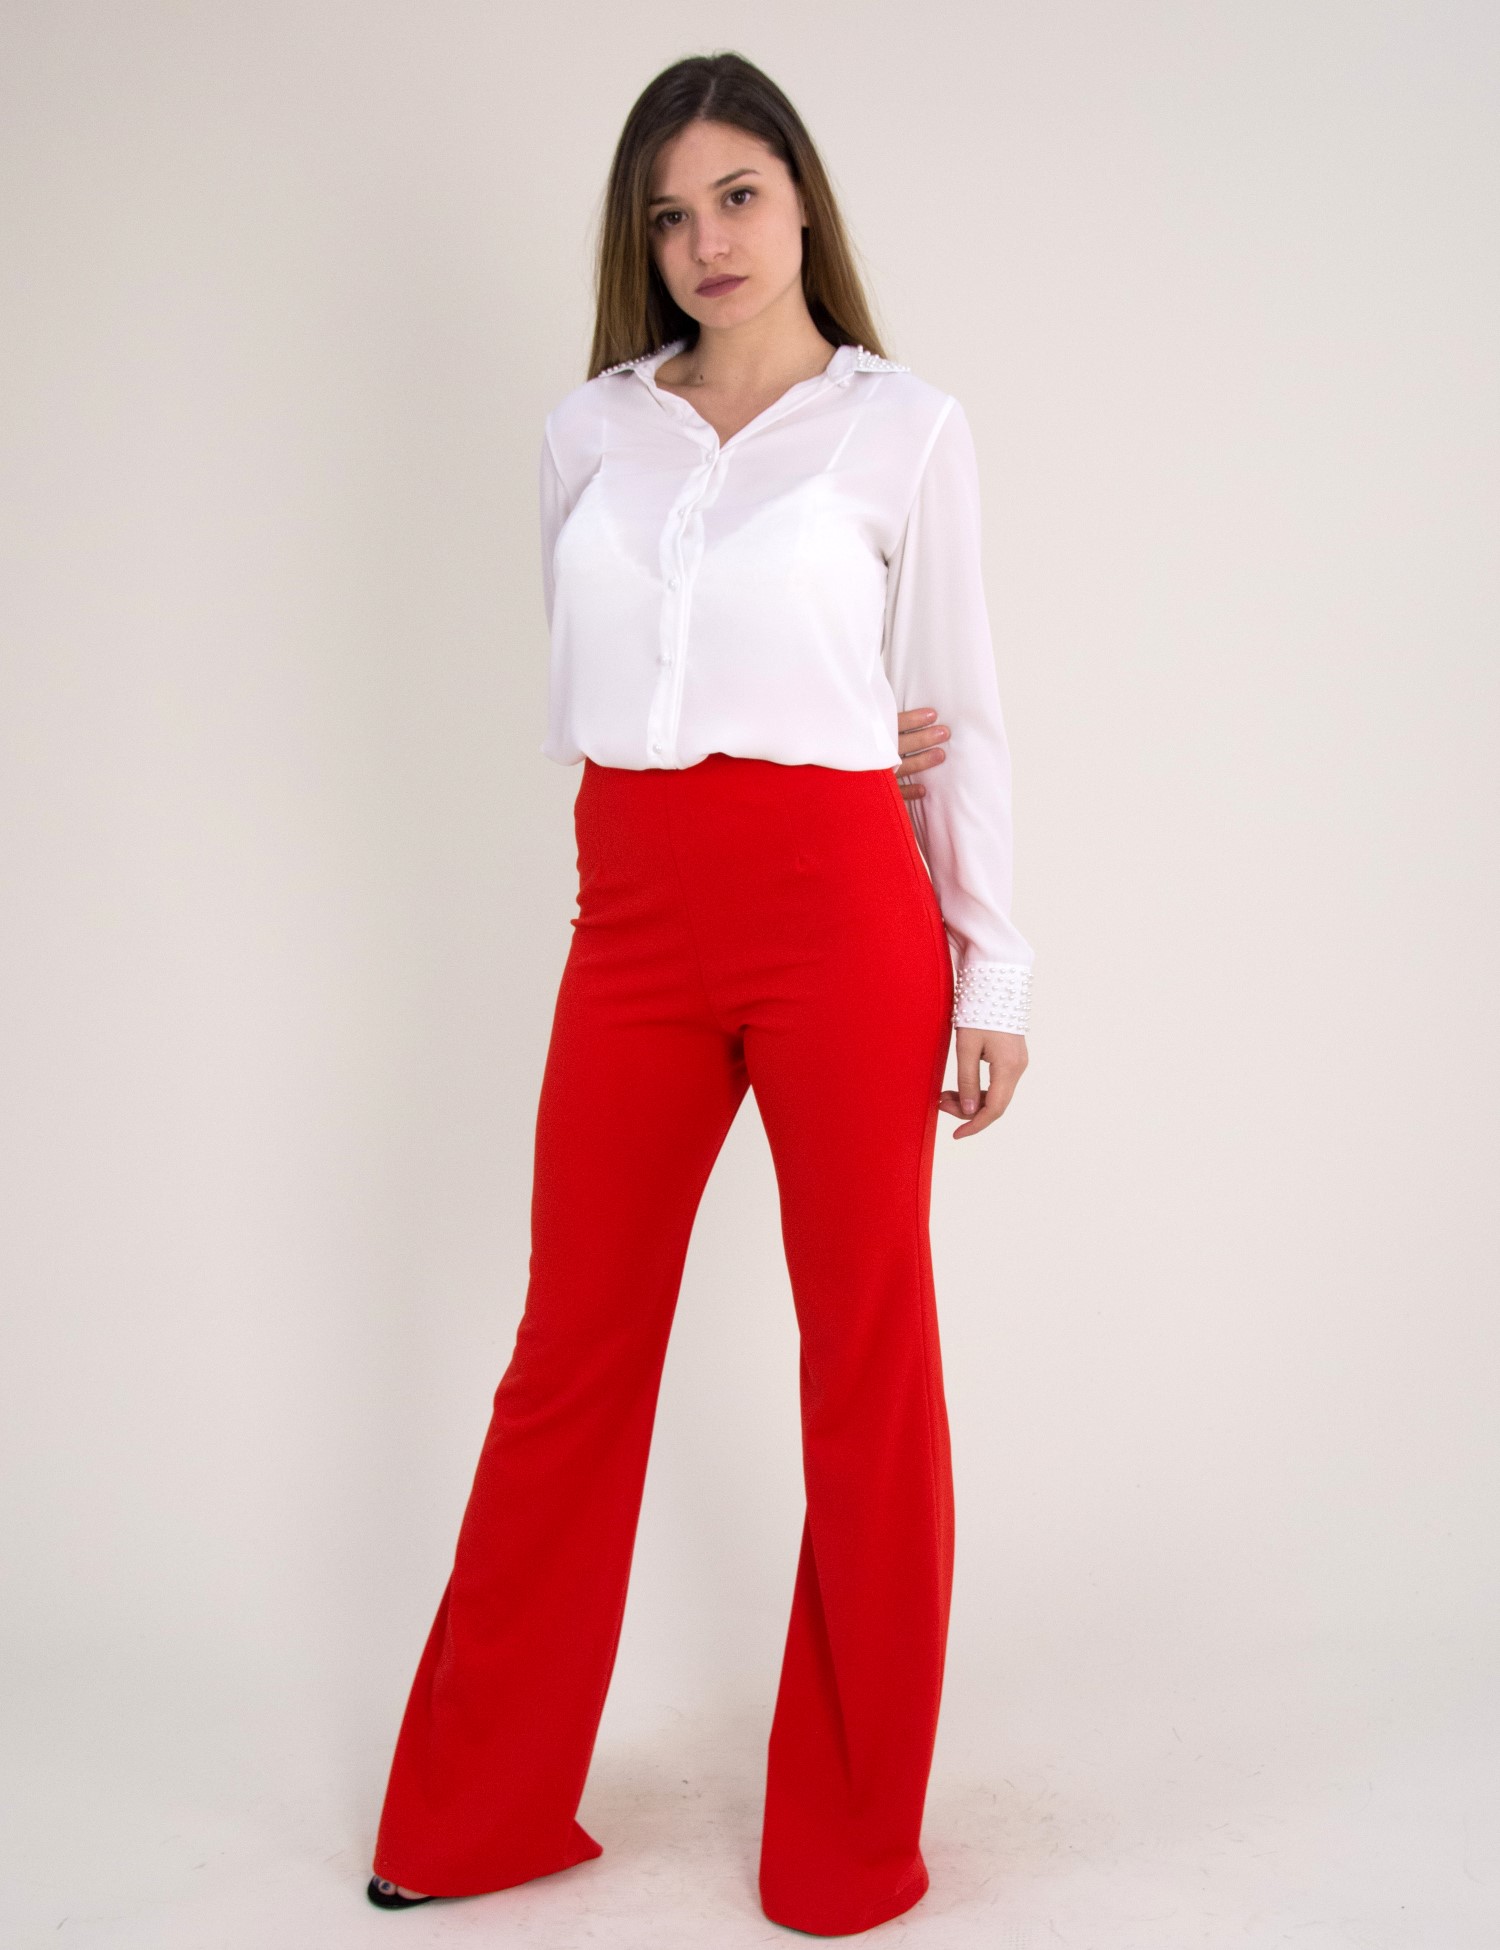 Γυναικείο μονόχρωμο παντελόνι κόκκινο καμπάνα 8124119